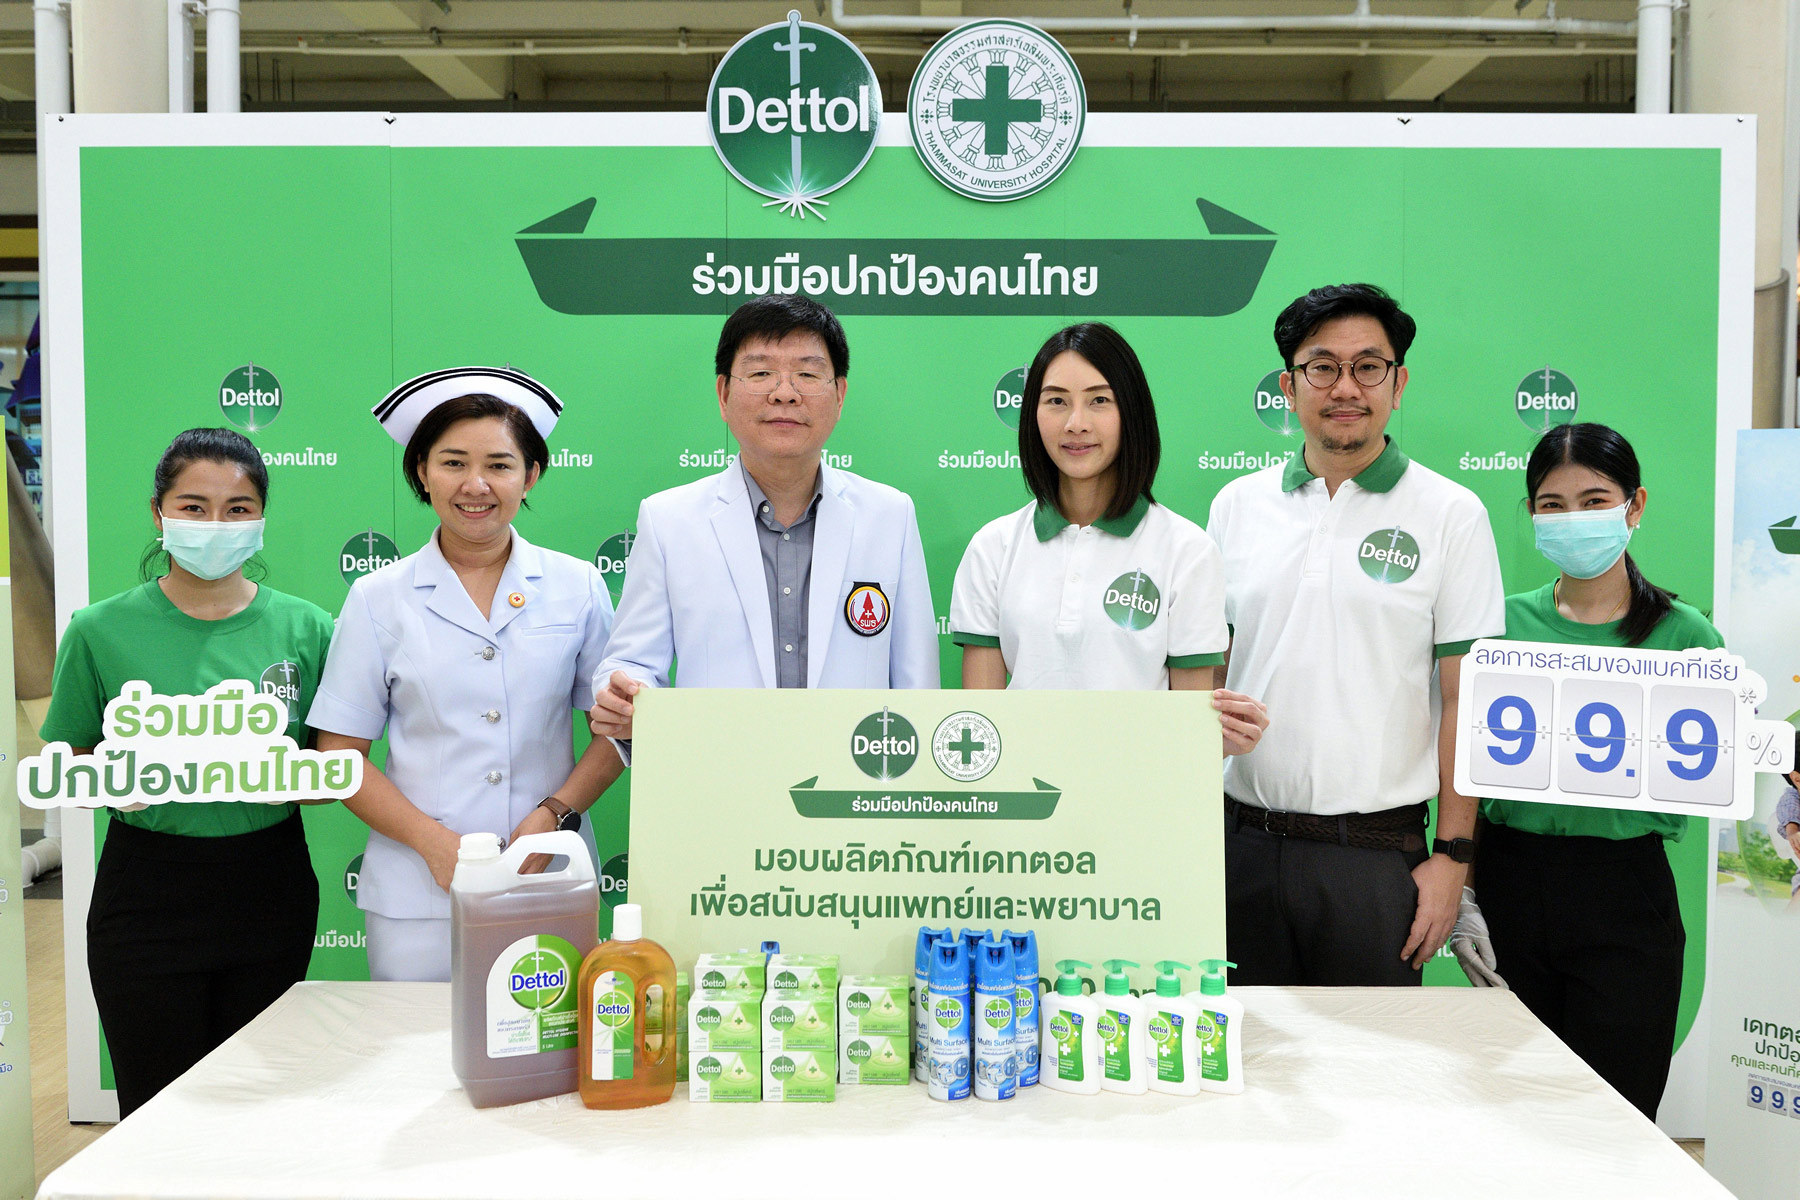 ภาพข่าว: เดทตอล ร่วมรณรงค์ปกป้องคนไทย สนับสนุนการปฏิบัติงานของแพทย์และพยาบาล โรงพยาบาลธรรมศาสตร์เฉลิมพระเกียรติ